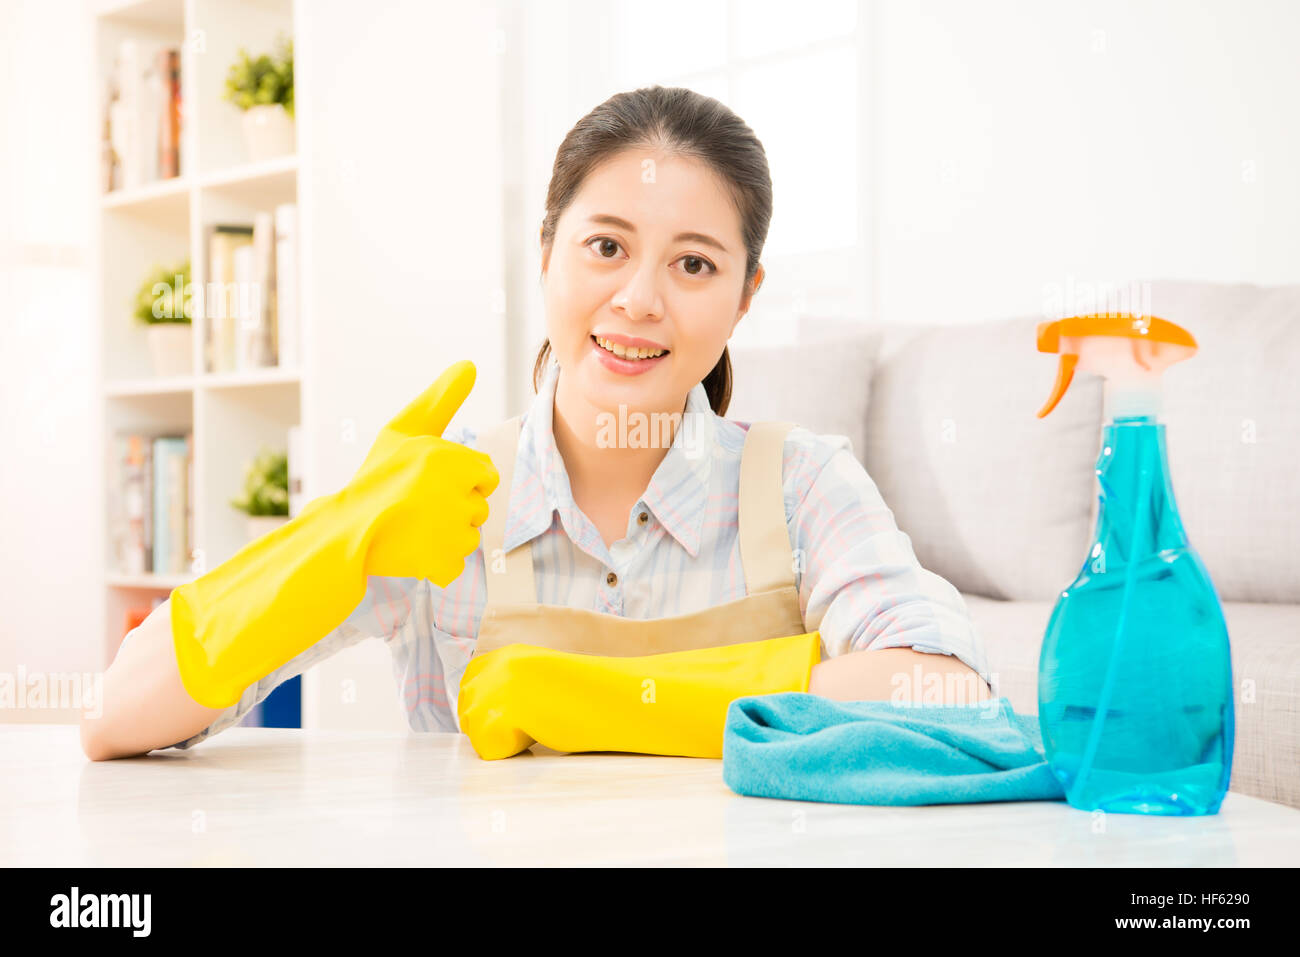 Jeune femme au foyer en gants jaunes showing Thumbs up fait le geste de nettoyage de salon à la maison. race mixte modèle chinois asiatique. Banque D'Images